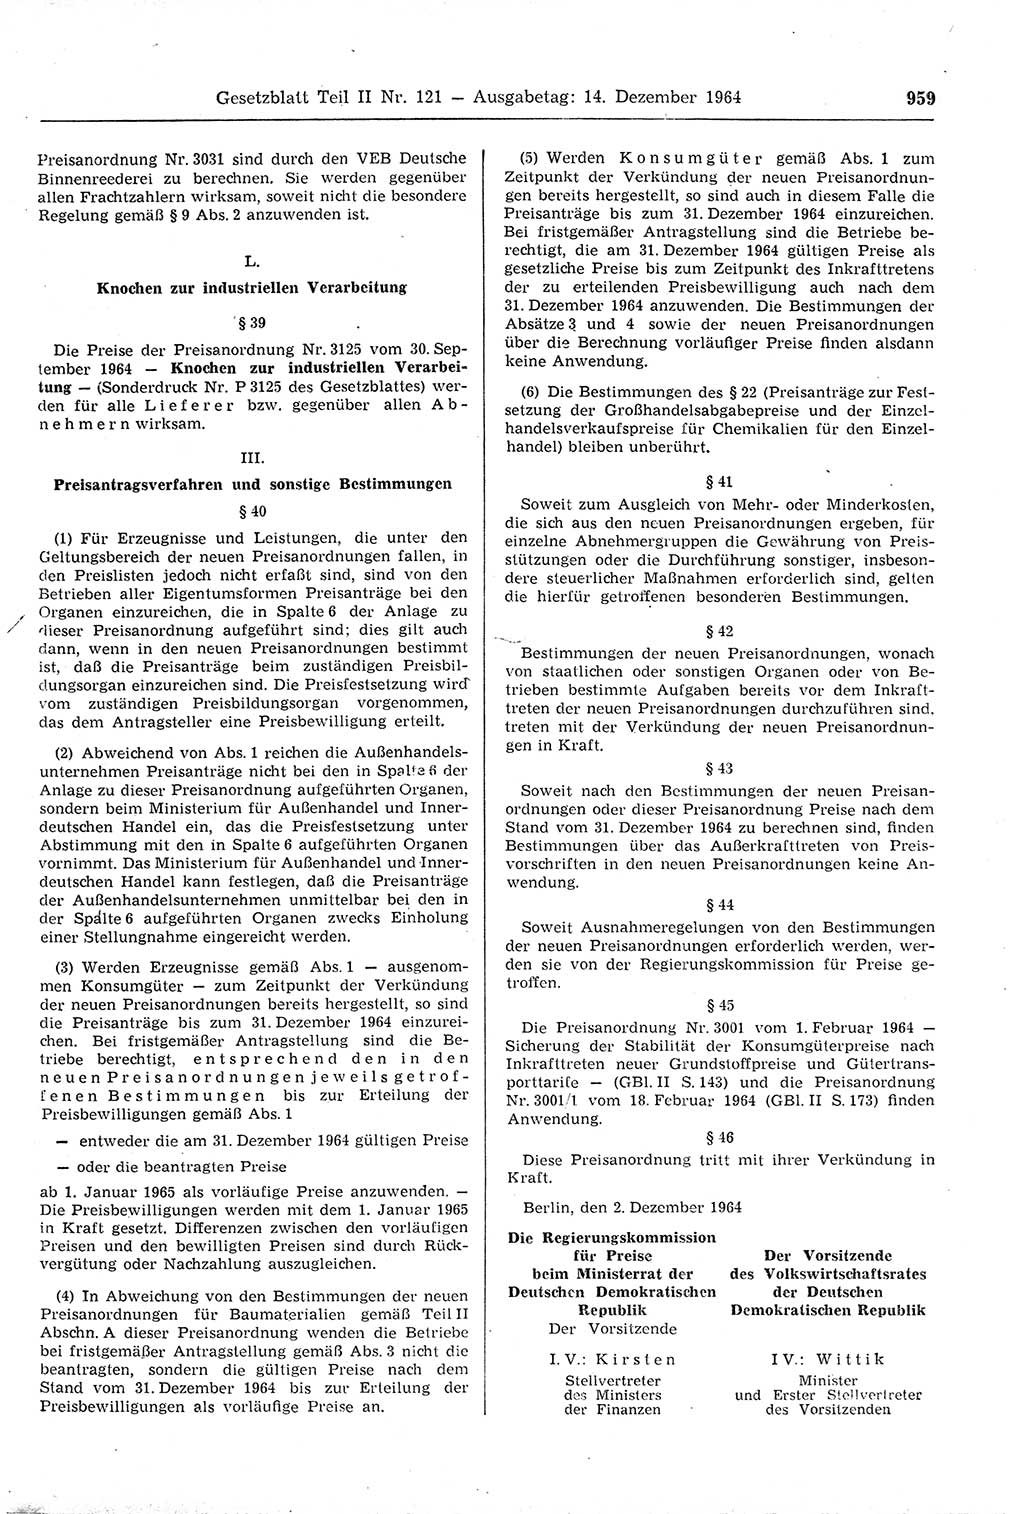 Gesetzblatt (GBl.) der Deutschen Demokratischen Republik (DDR) Teil ⅠⅠ 1964, Seite 959 (GBl. DDR ⅠⅠ 1964, S. 959)